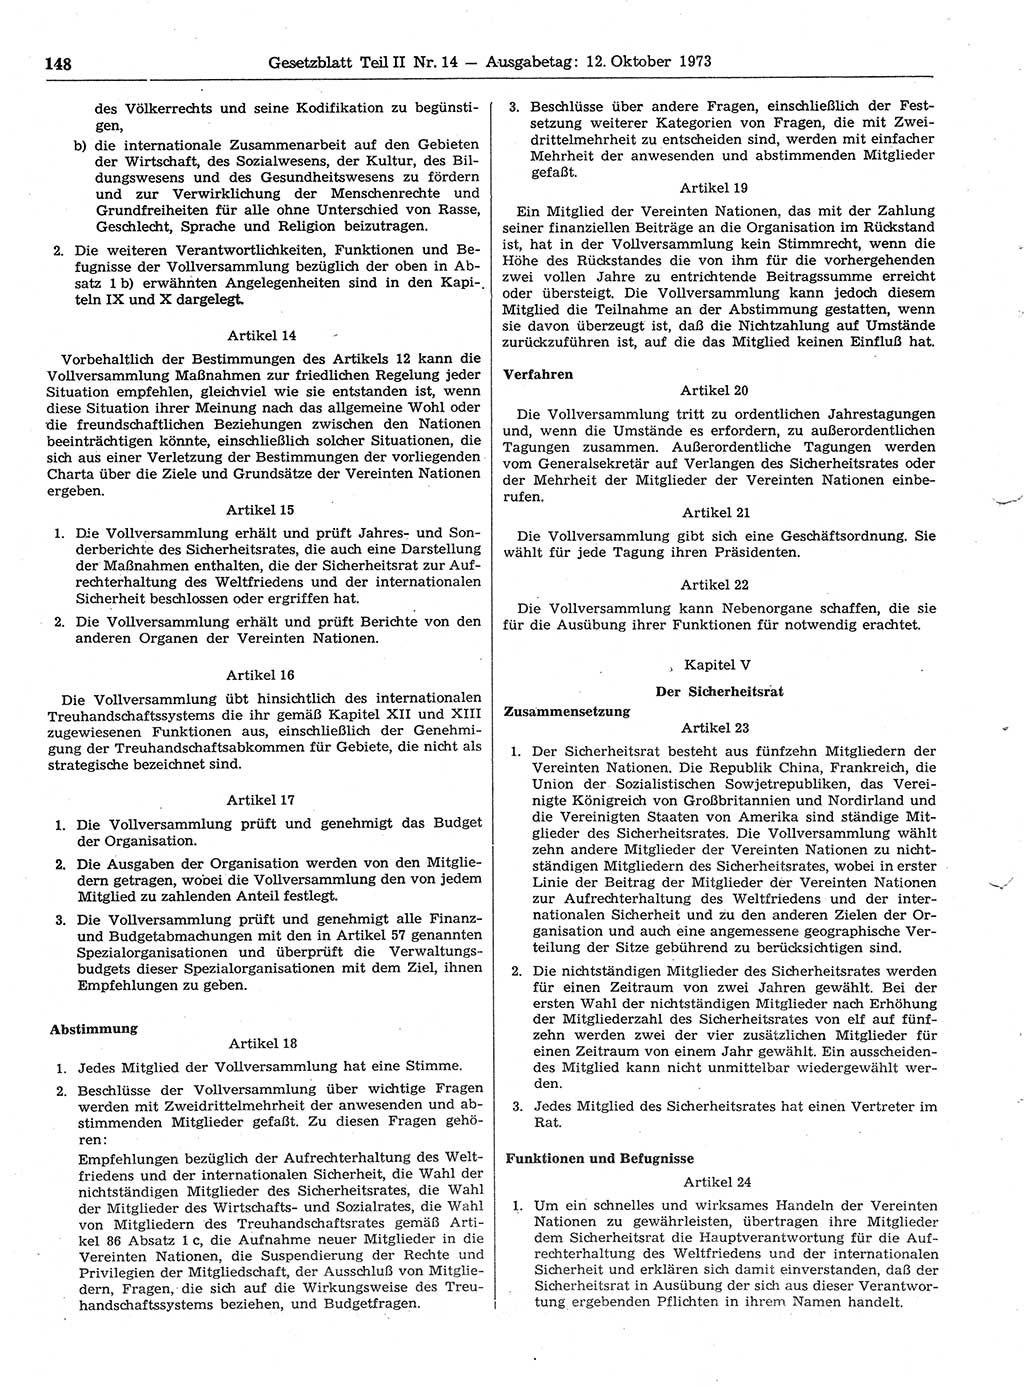 Gesetzblatt (GBl.) der Deutschen Demokratischen Republik (DDR) Teil ⅠⅠ 1973, Seite 148 (GBl. DDR ⅠⅠ 1973, S. 148)